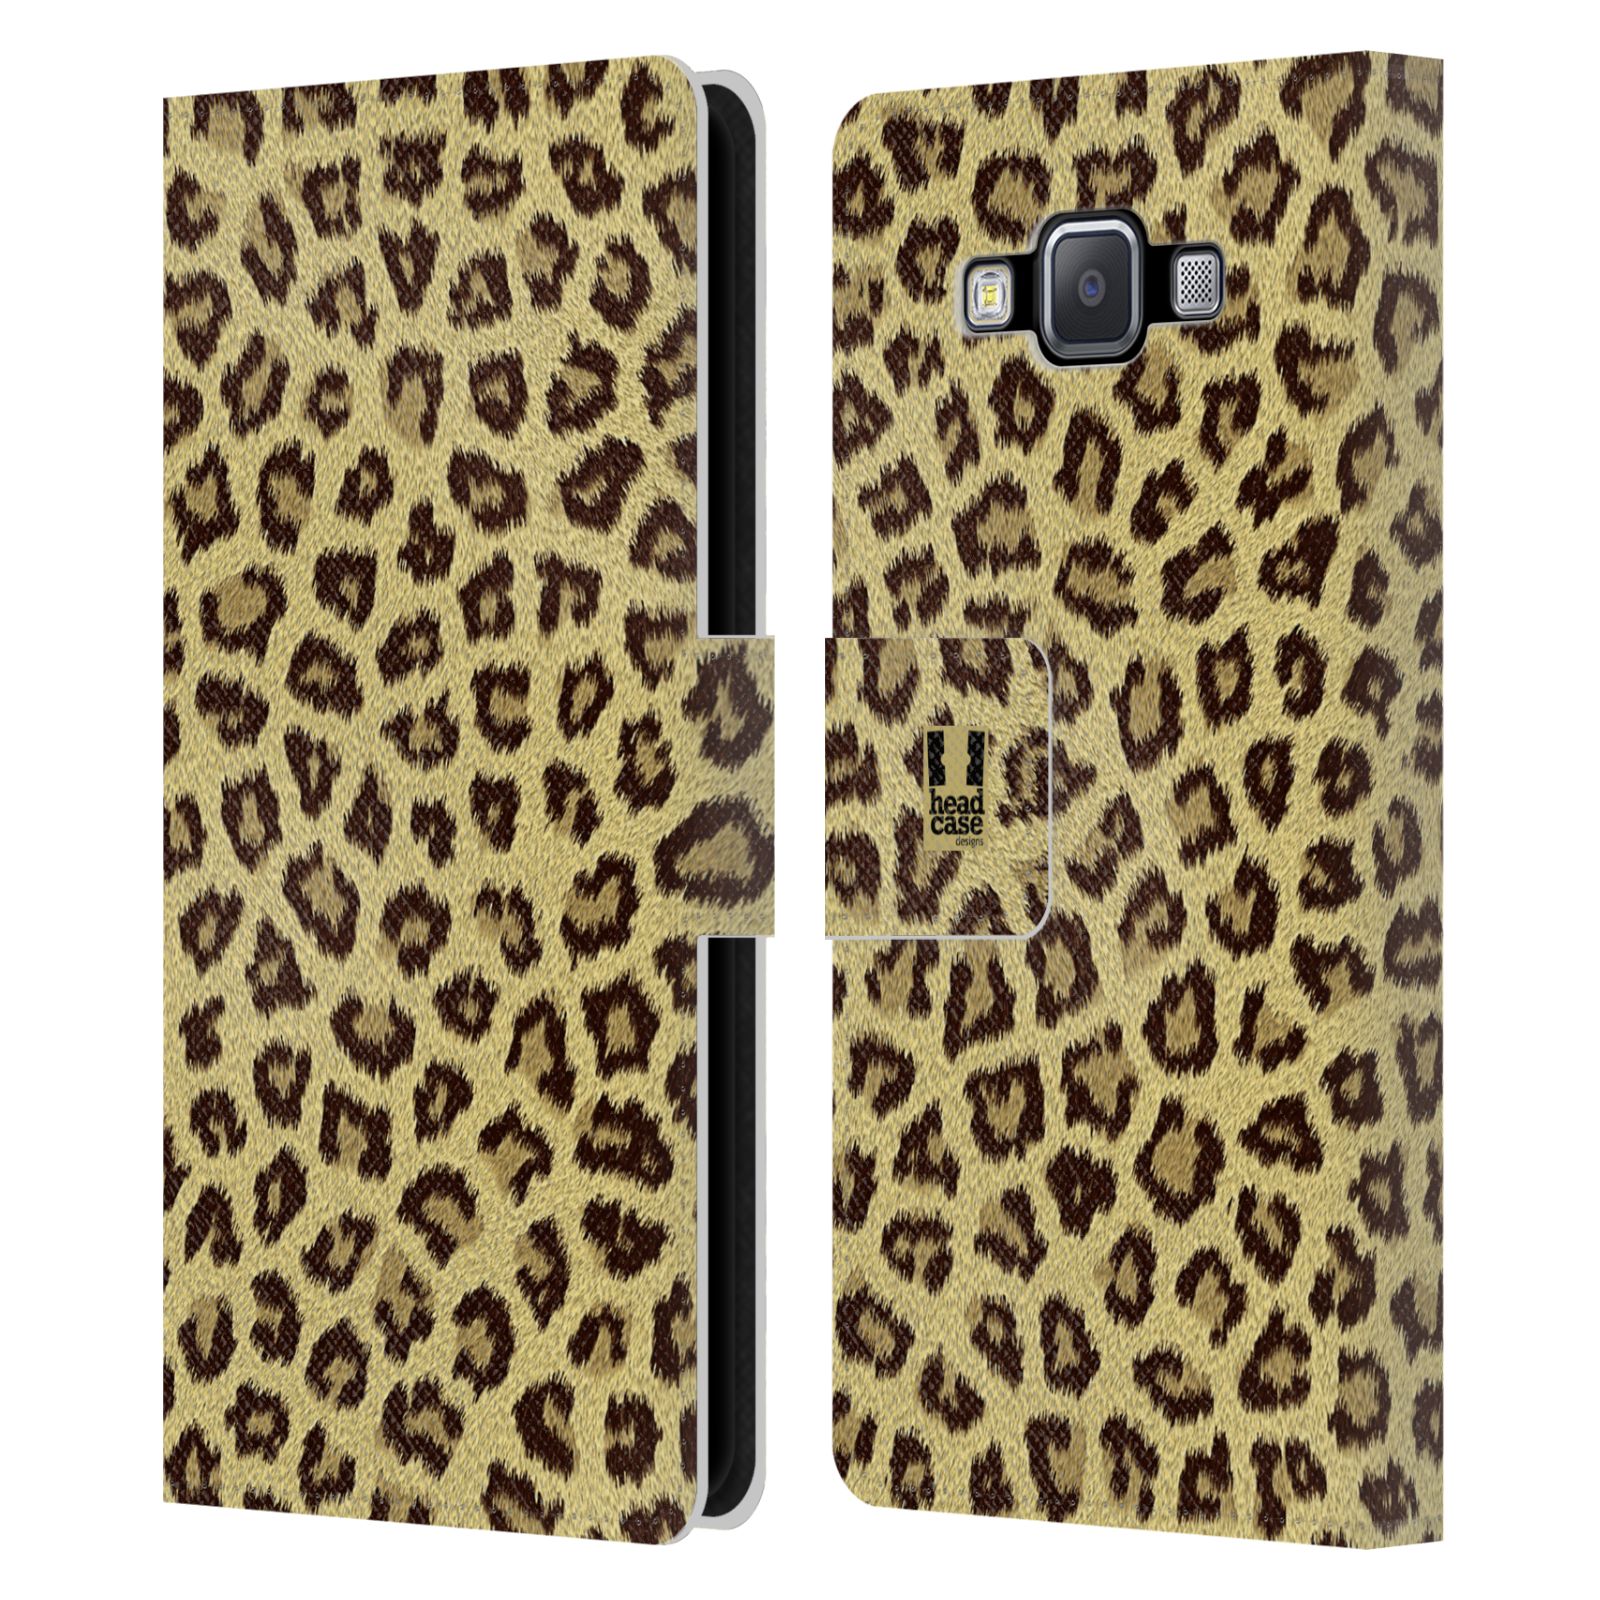 HEAD CASE Flipové pouzdro pro mobil Samsung Galaxy A5 zvíře srst divoká kolekce jaguár, gepard